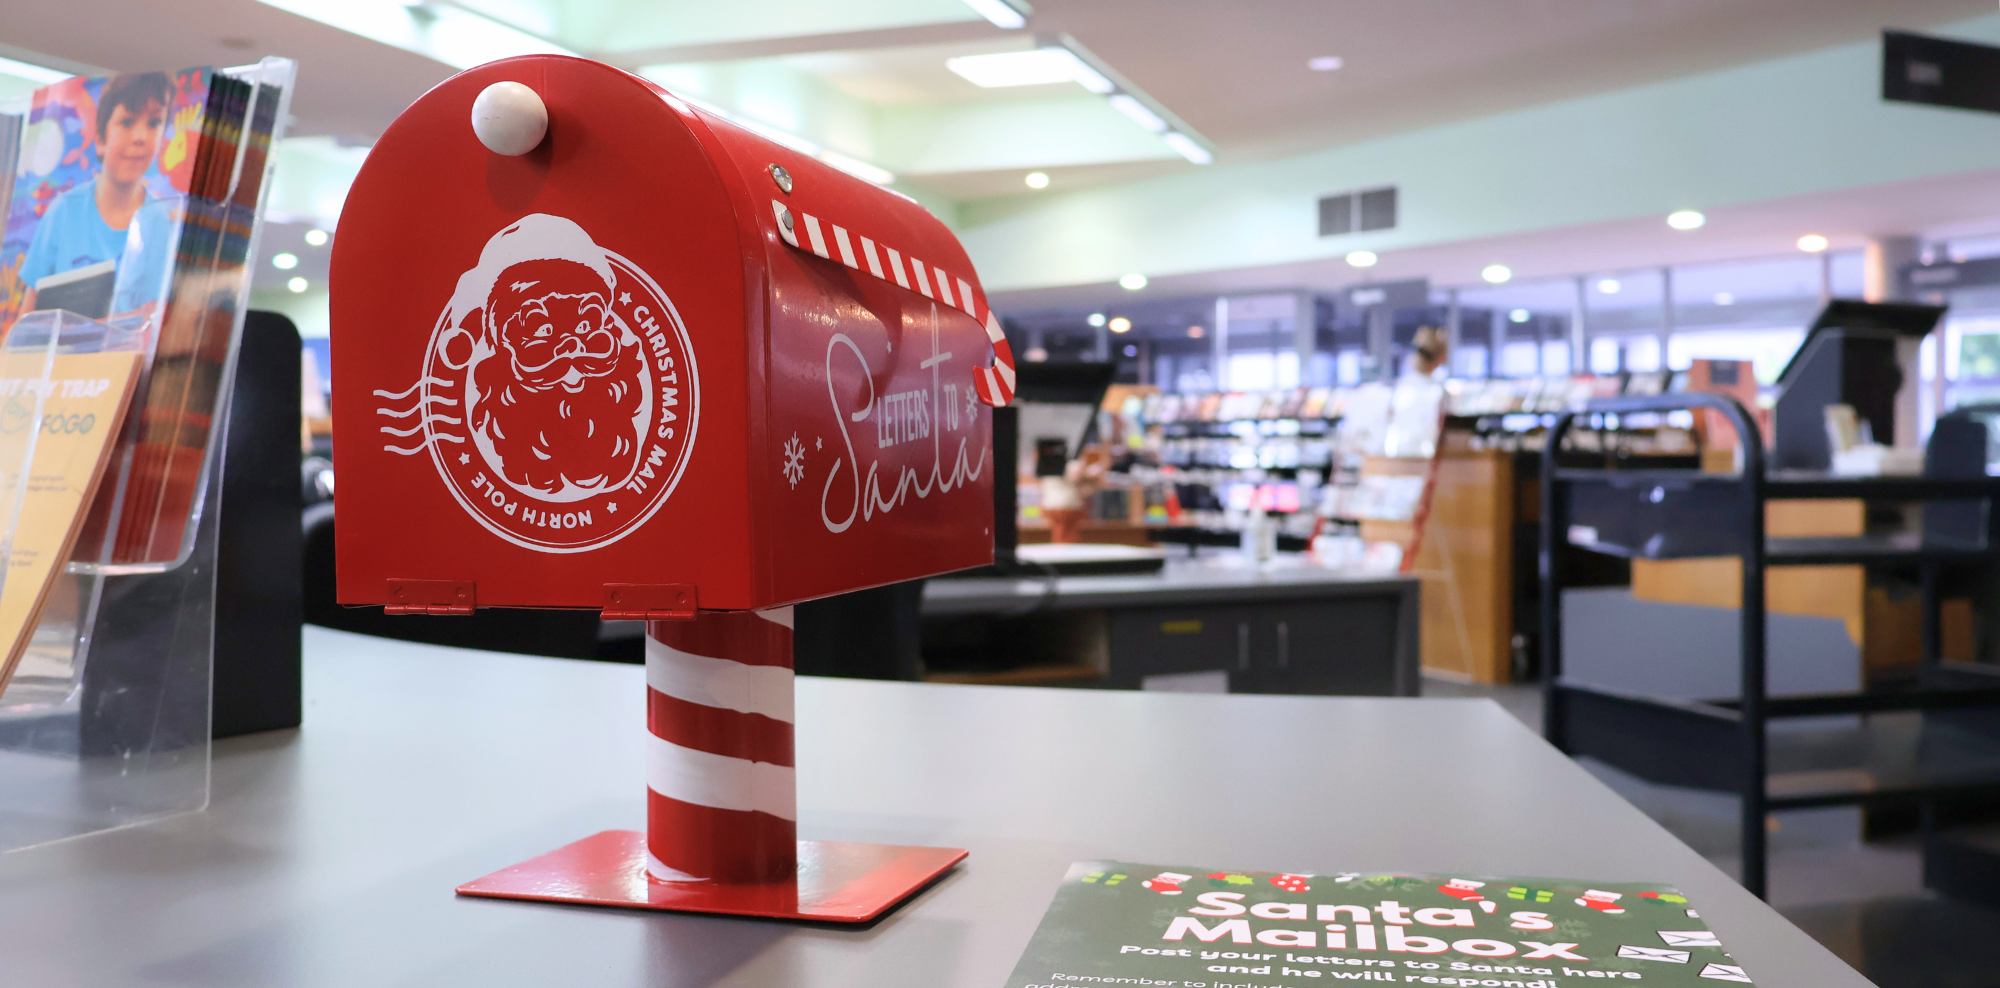 Santa's Mailbox at Dapto Library 2022